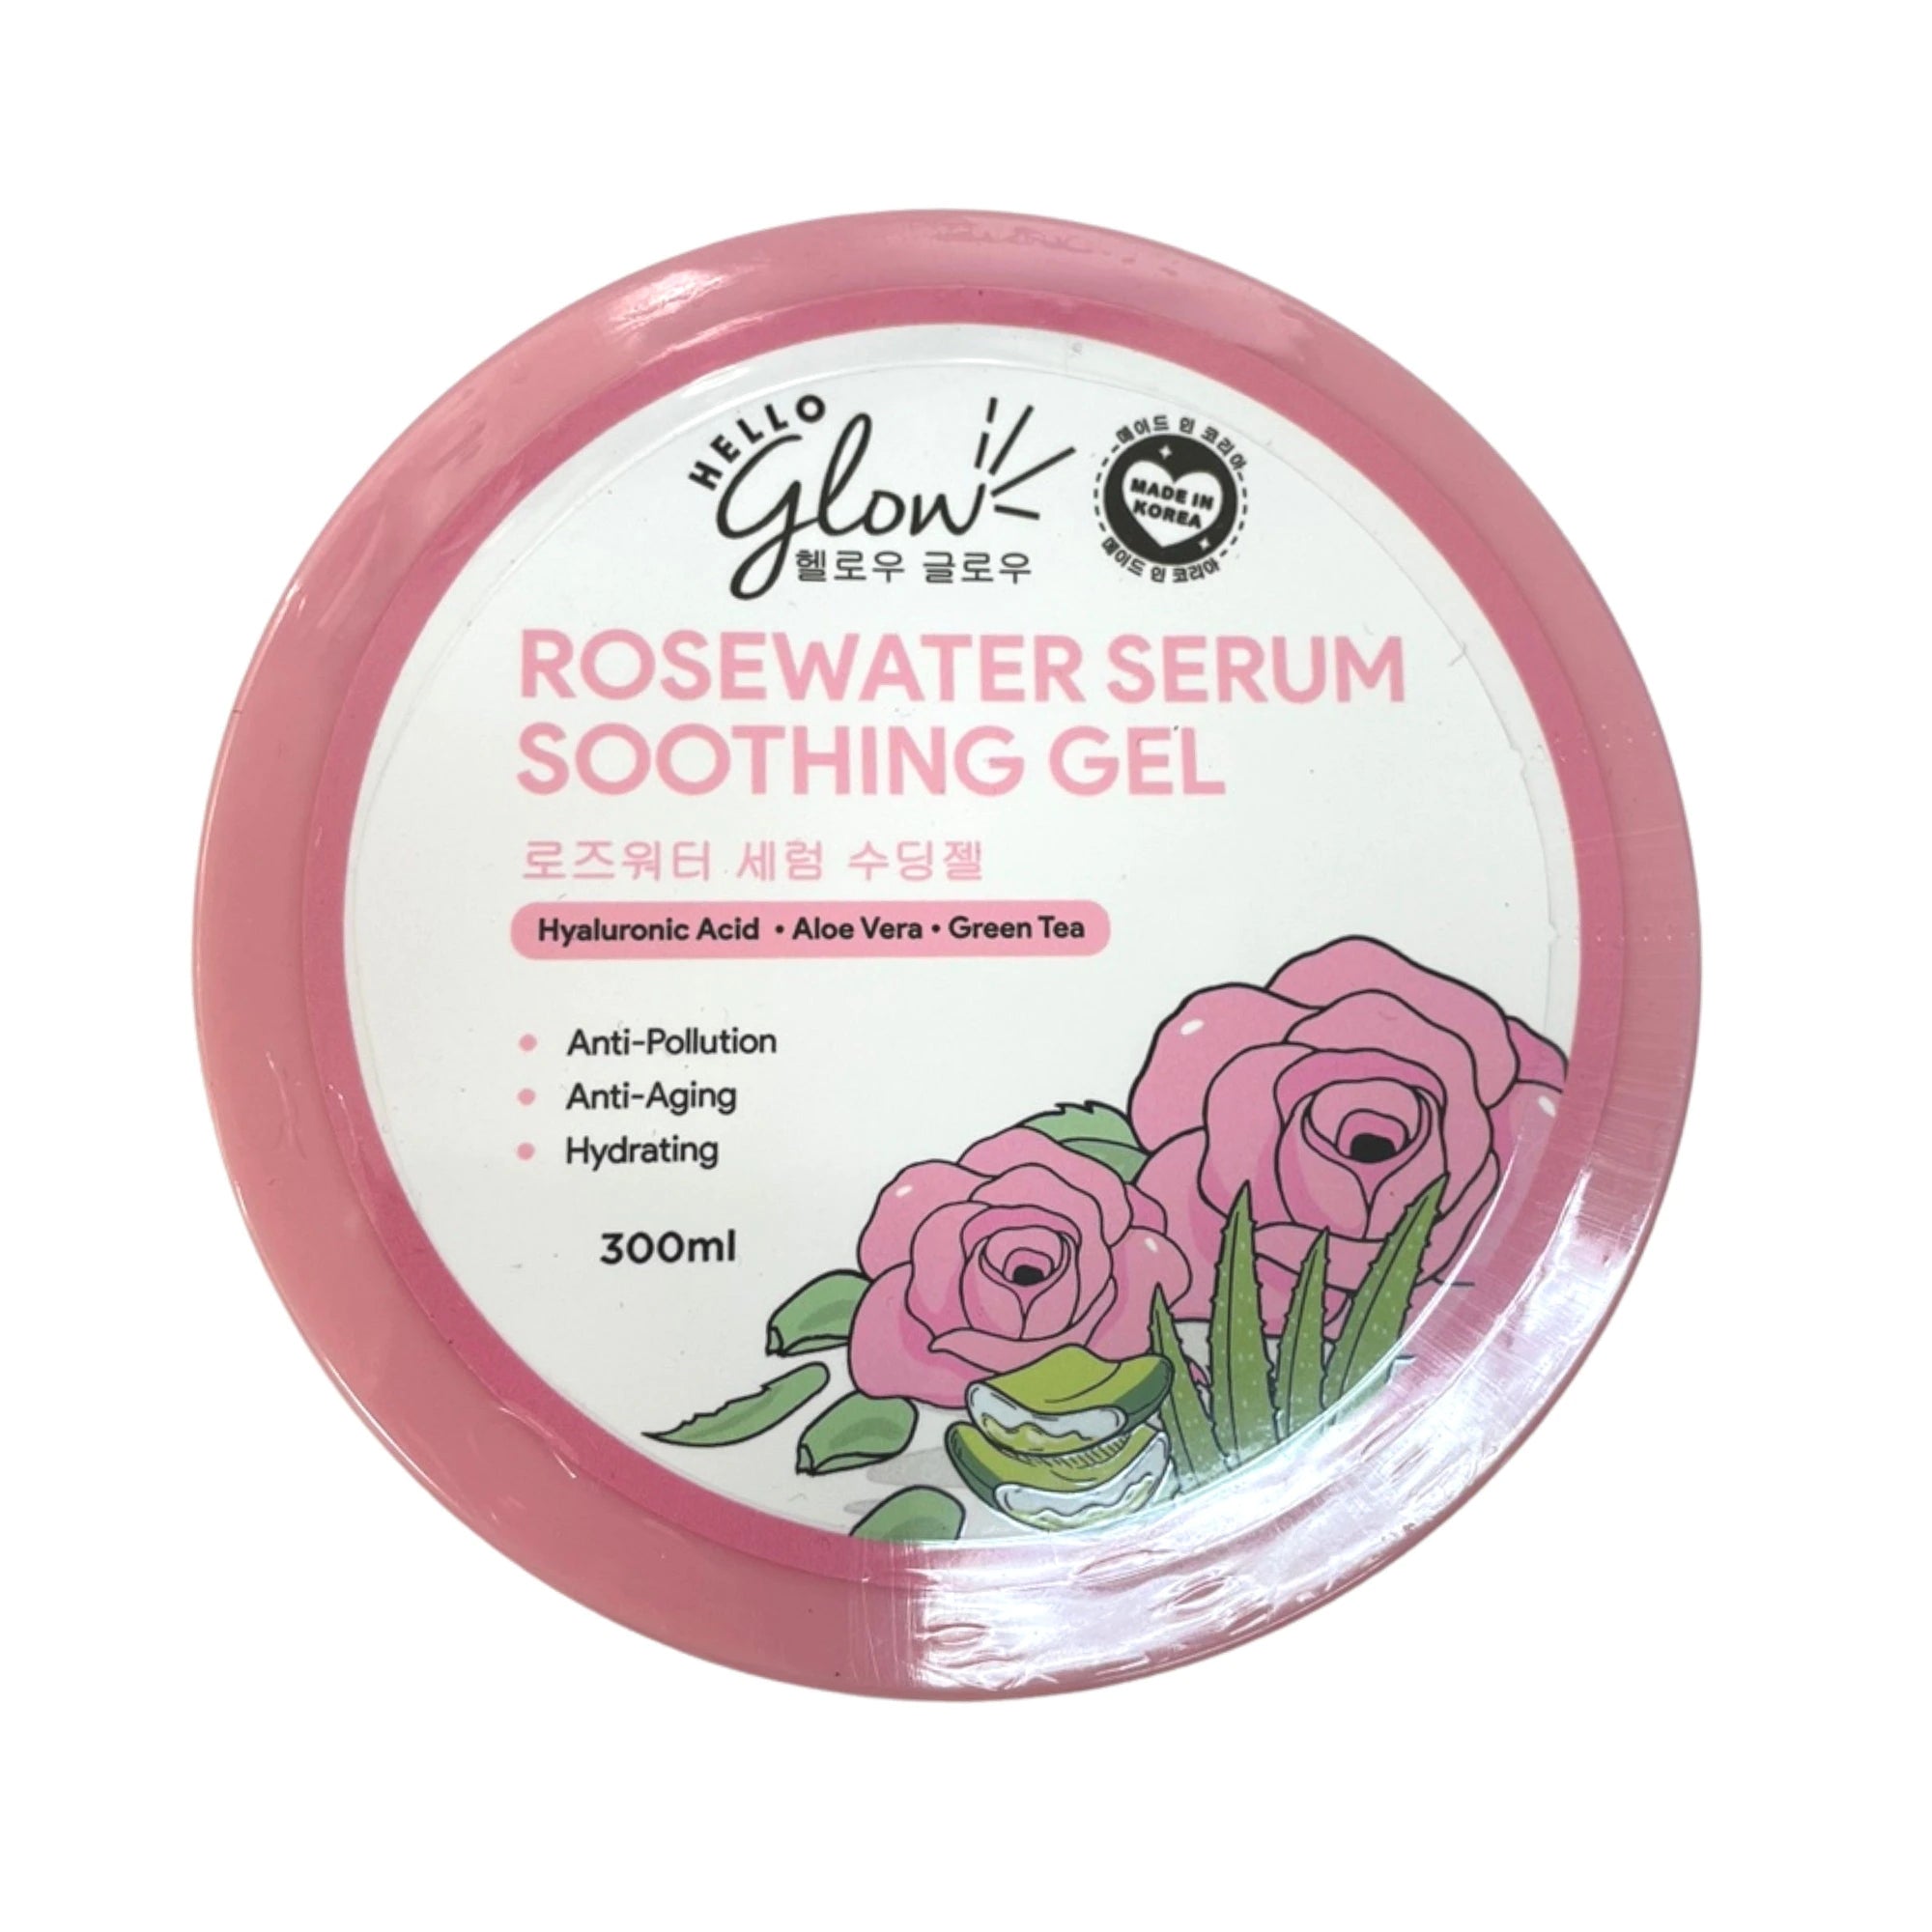 Hello Glow Rose Water Serum Soothing Gel